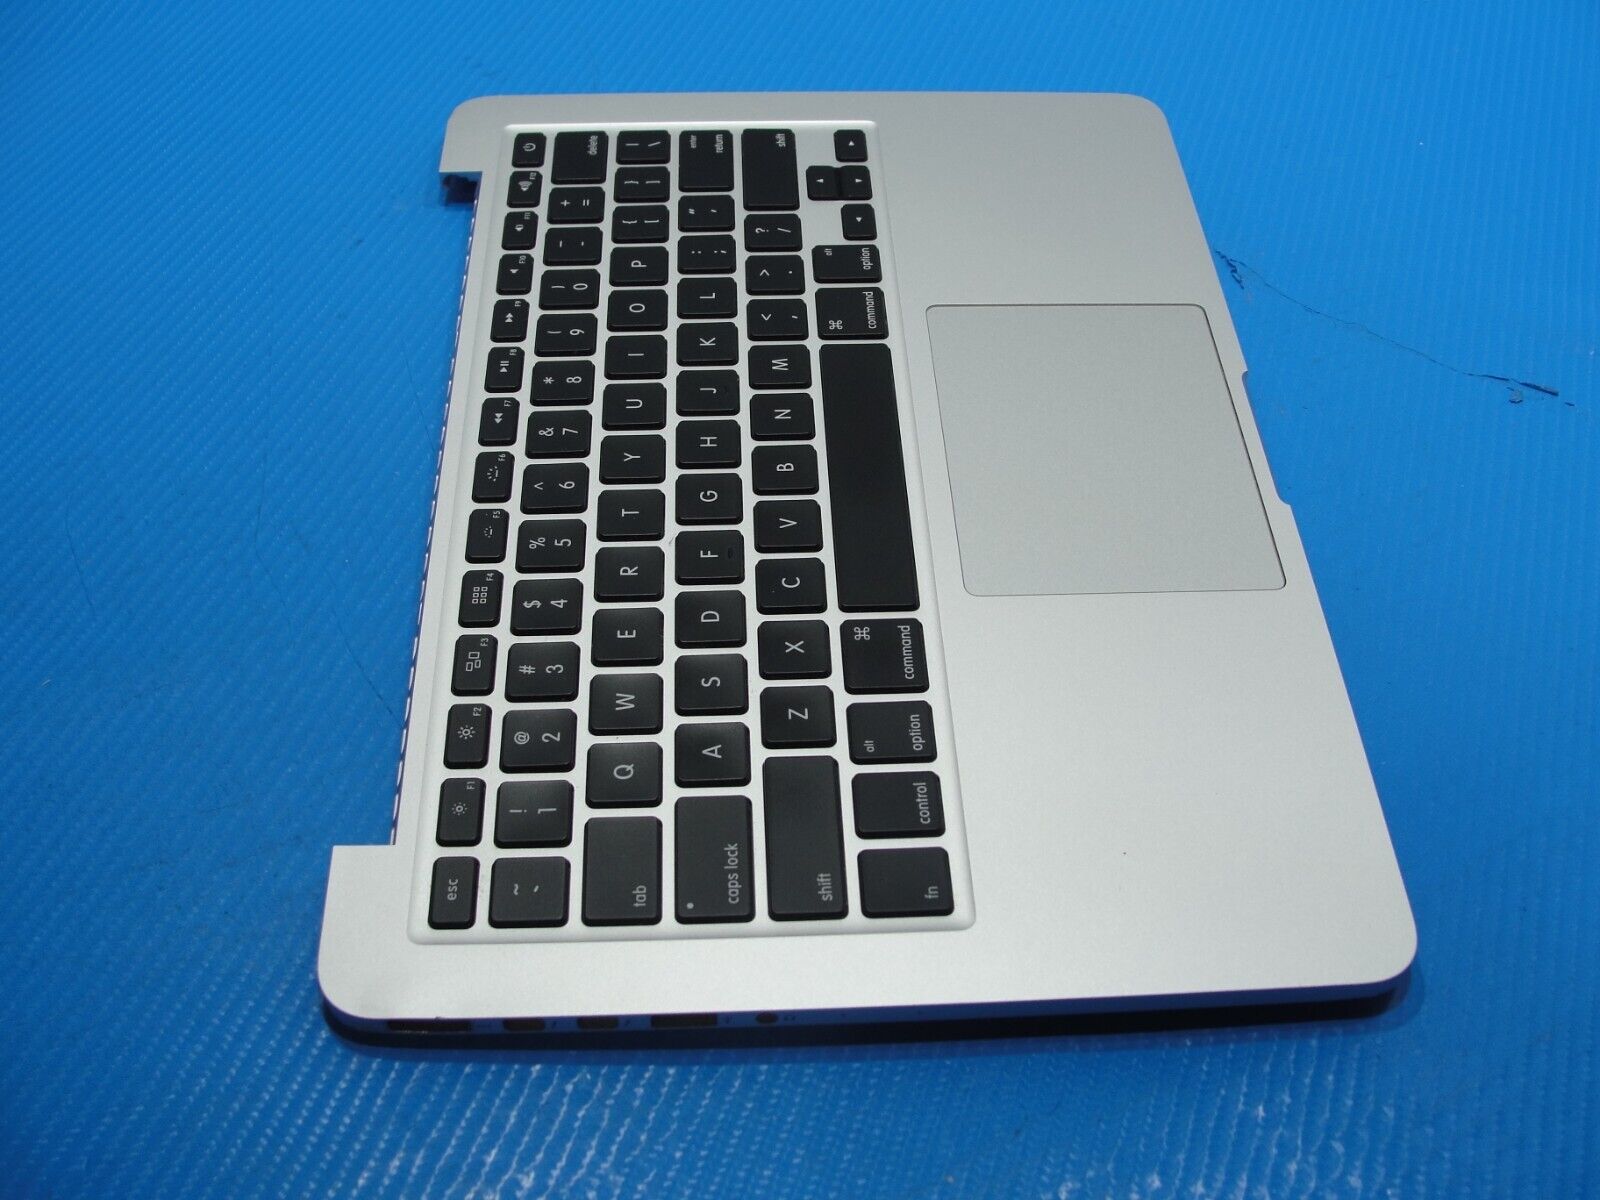 MacBook Pro A1425 13